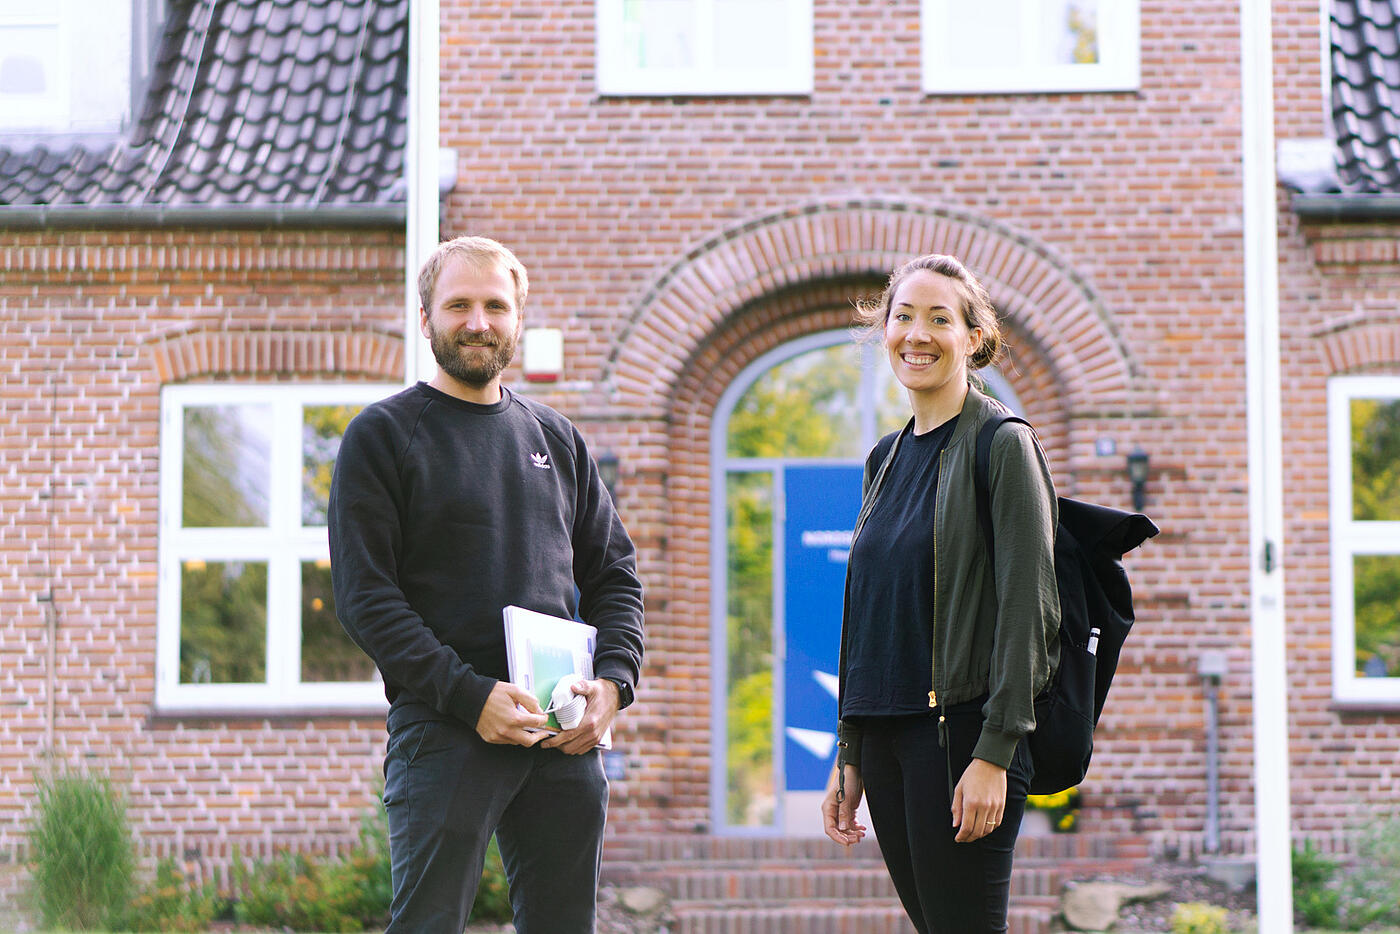 Malte Riechmann und Frauke Hellwig stehen vorm Eingang einer der Bildungsstätten und lächeln in die Kamera.